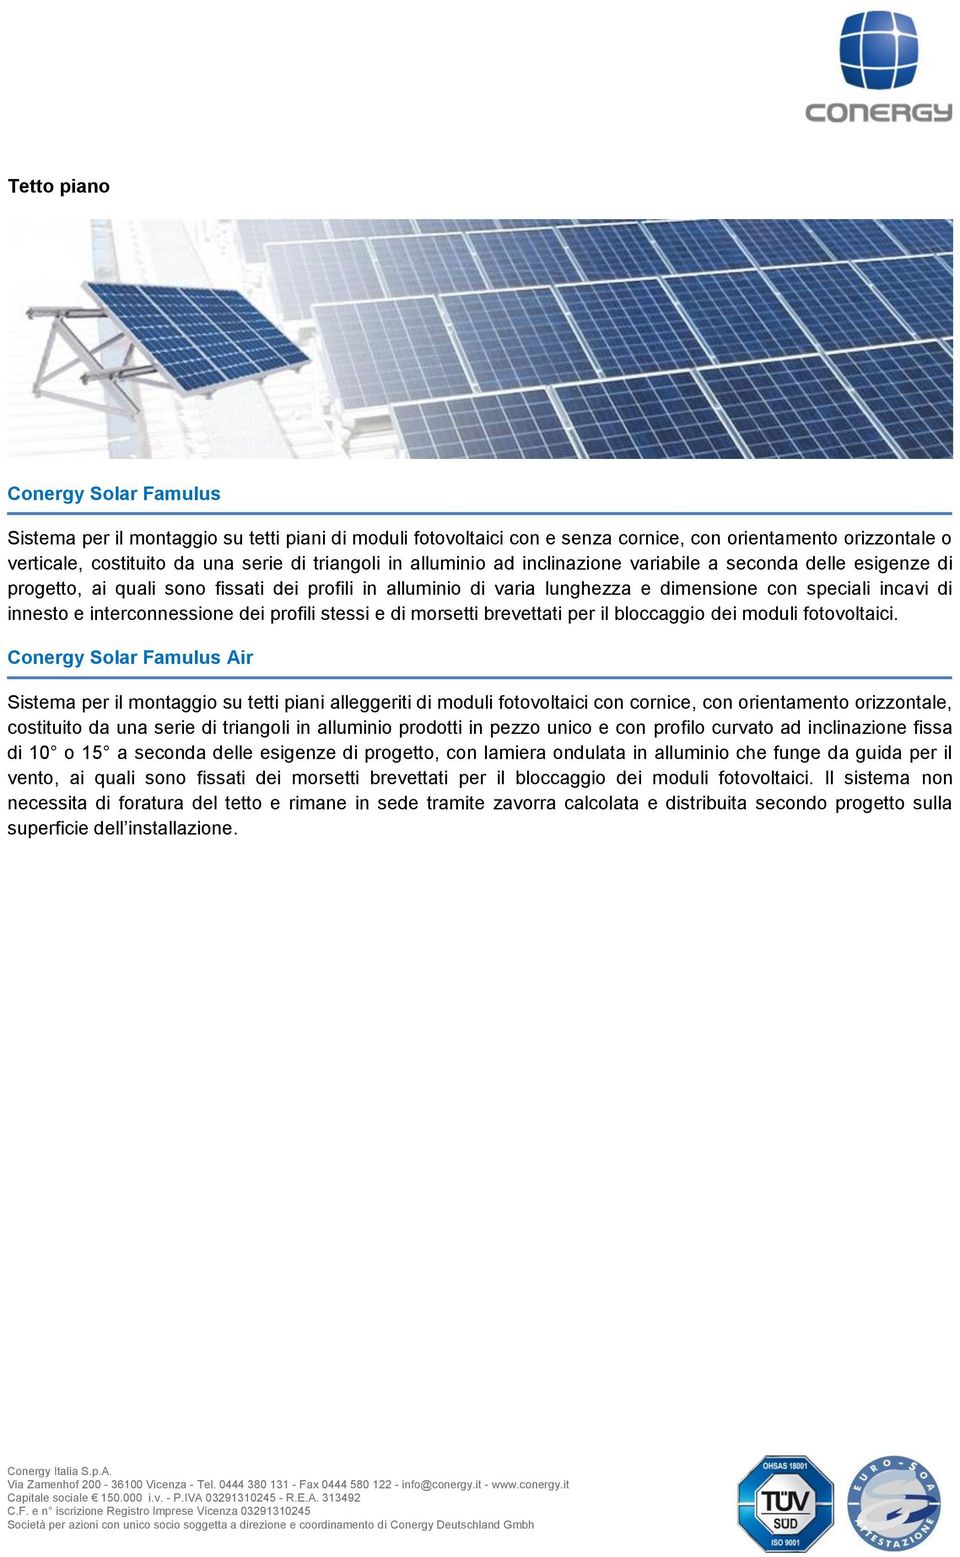 interconnessione dei profili stessi e di morsetti brevettati per il bloccaggio dei moduli fotovoltaici.